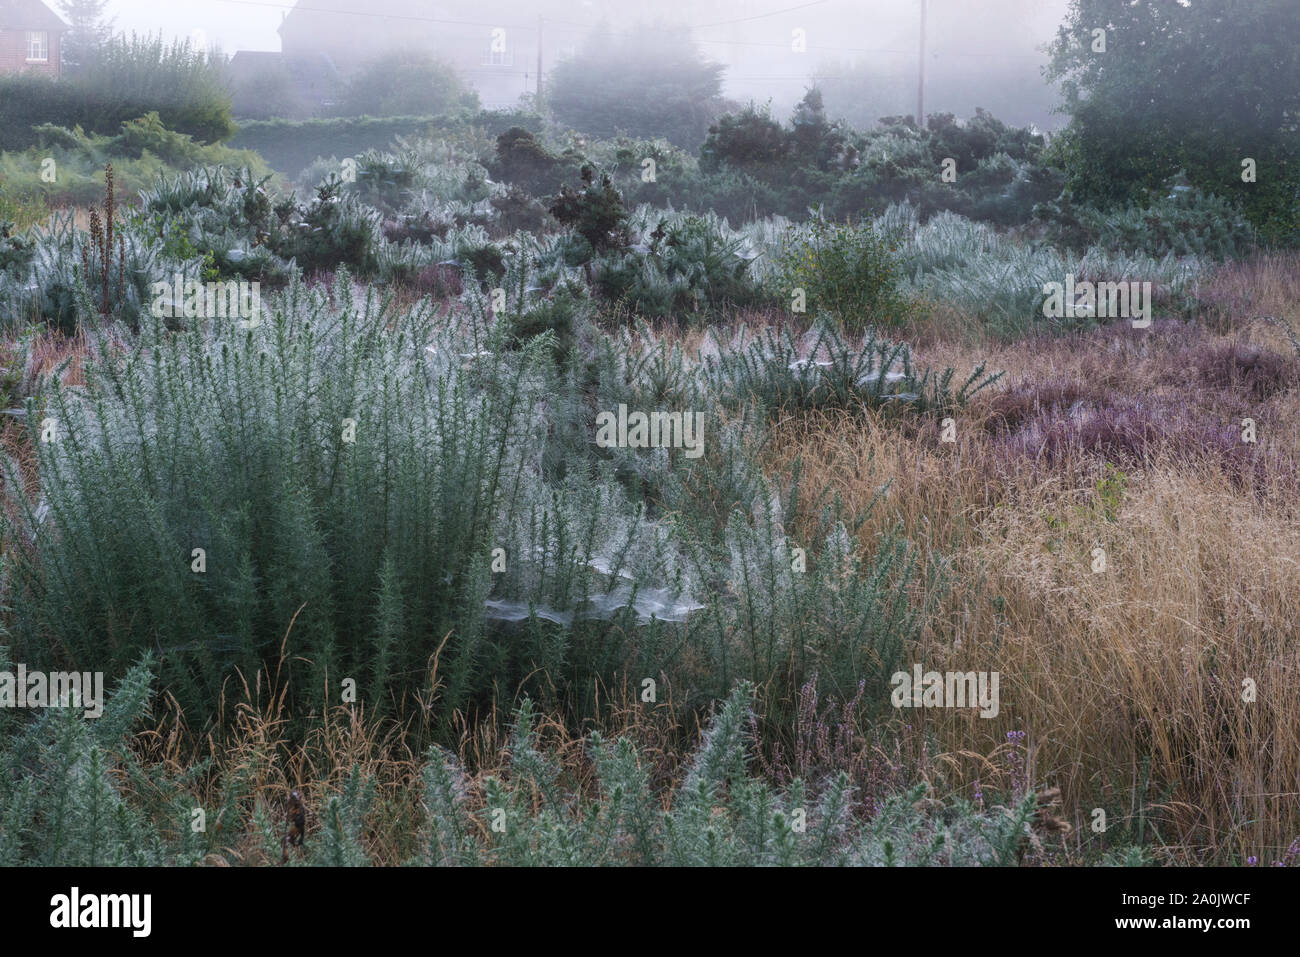 La rosée du matin sur araignées sur les buissons de gaze à Ling Ride près de Ringshall, Ashridge Woods, Hertfordshire, 20 Septembre 2019 Banque D'Images